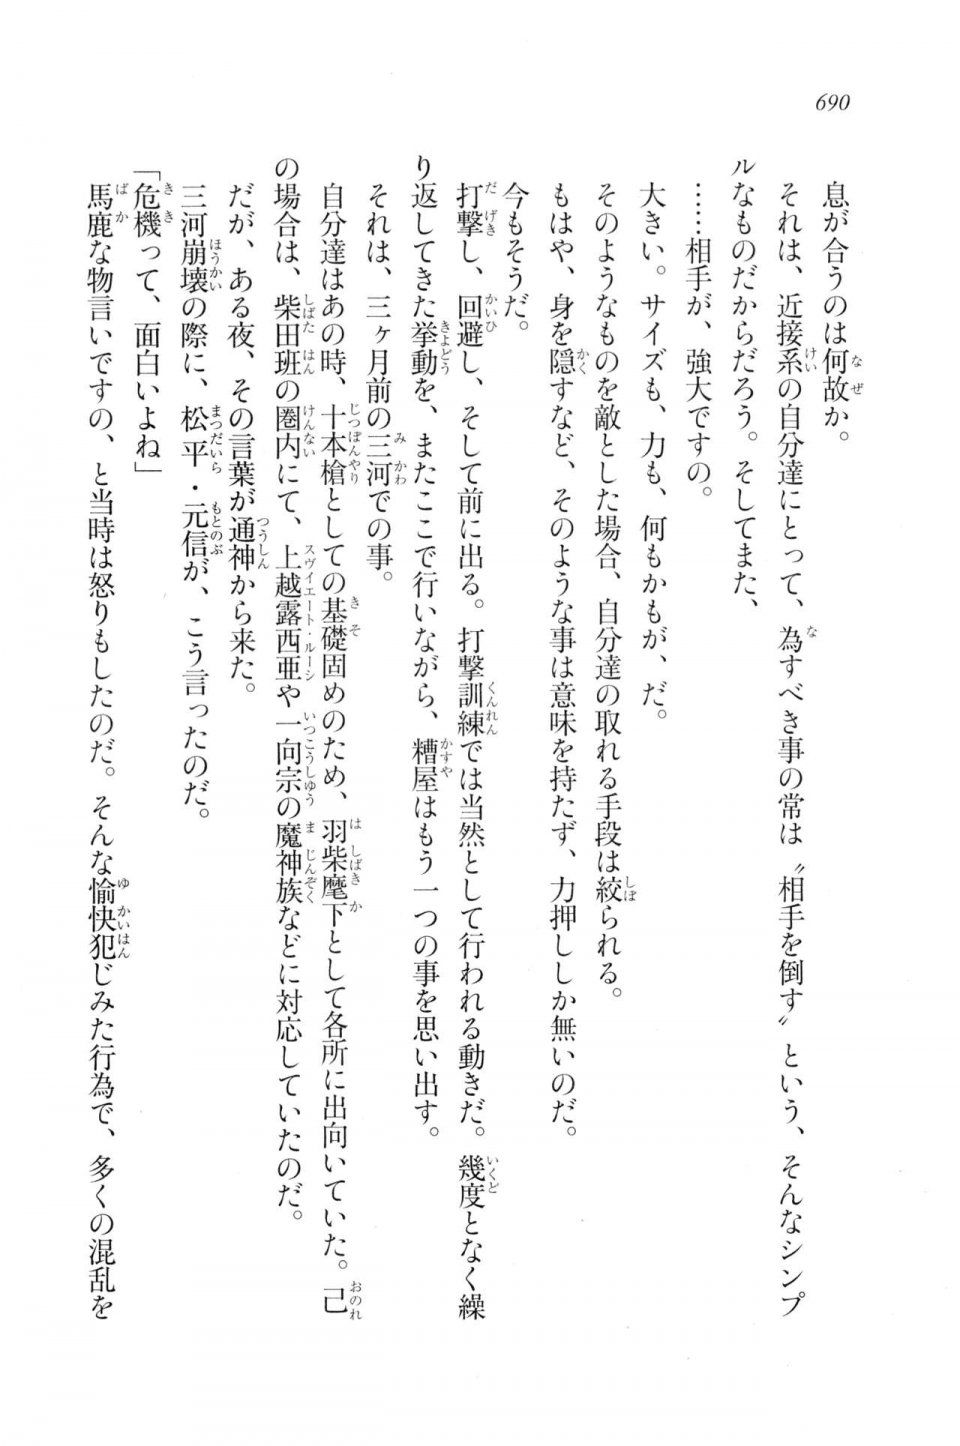 Kyoukai Senjou no Horizon LN Vol 20(8B) - Photo #690